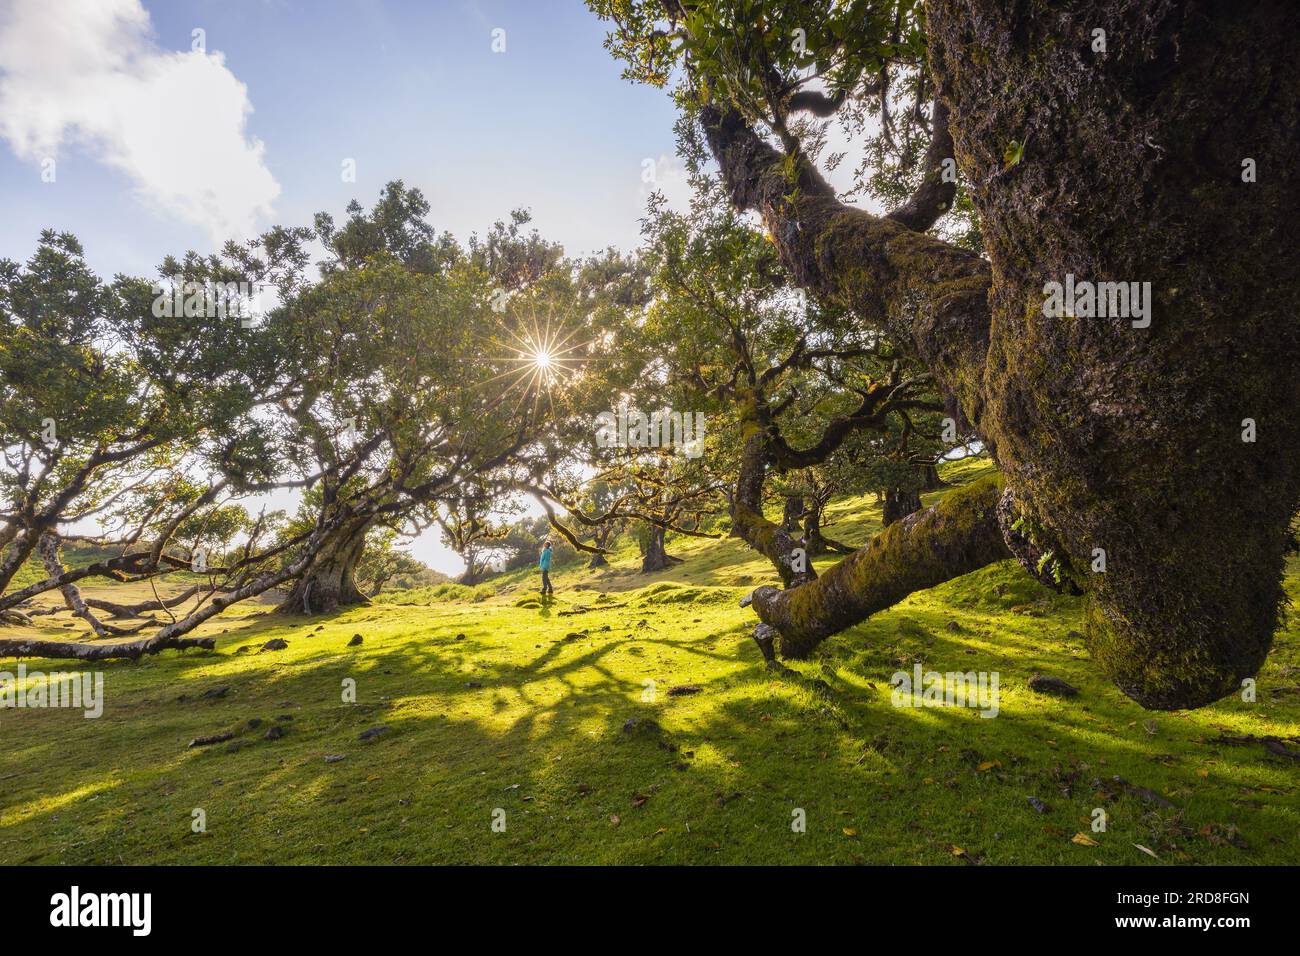 Der majestätische Fanalwald an einem Frühlingstag mit Lava-Bäumen und einer Person bei Sonnenuntergang, Porto Moniz, Madeira, Portugal, Atlantik, Europa Stockfoto